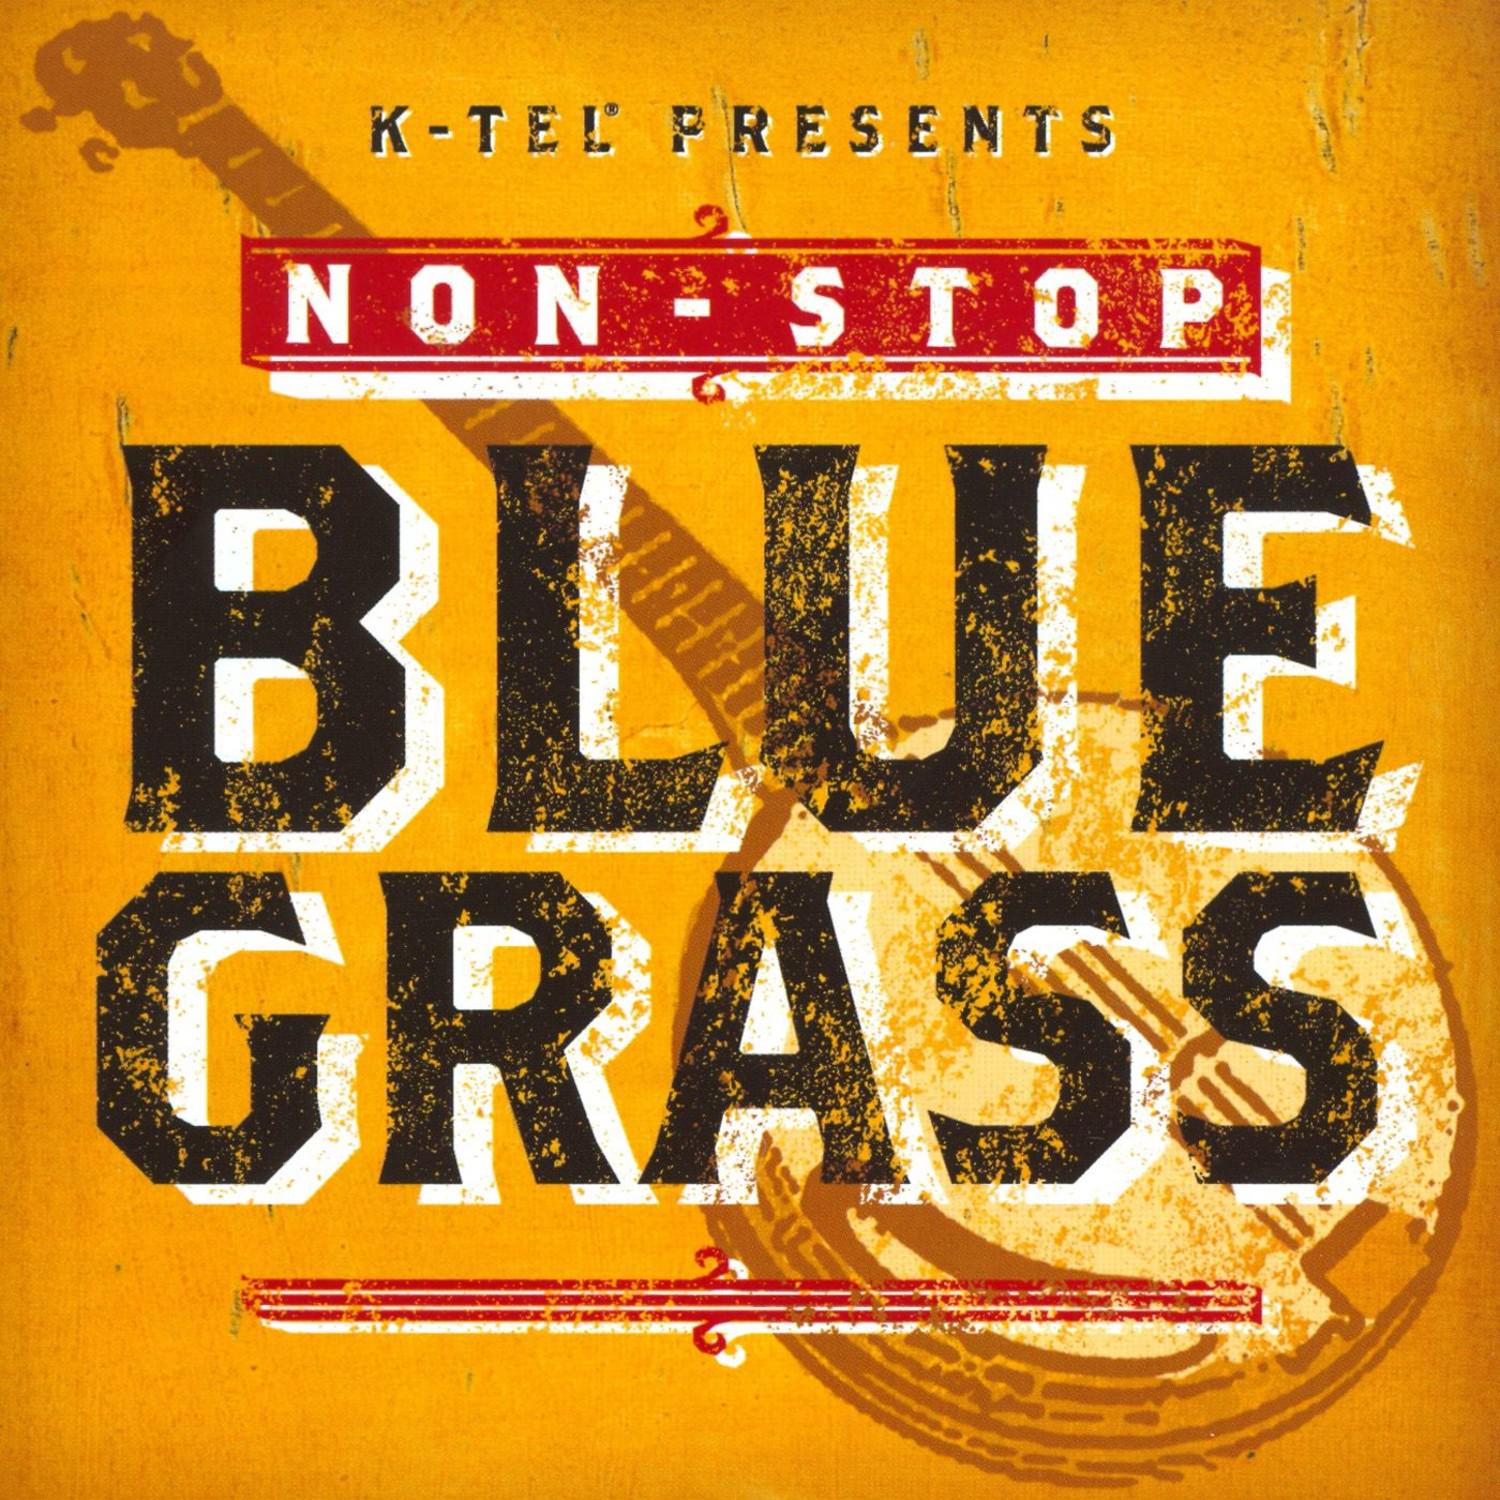 Non-Stop Blue Grass